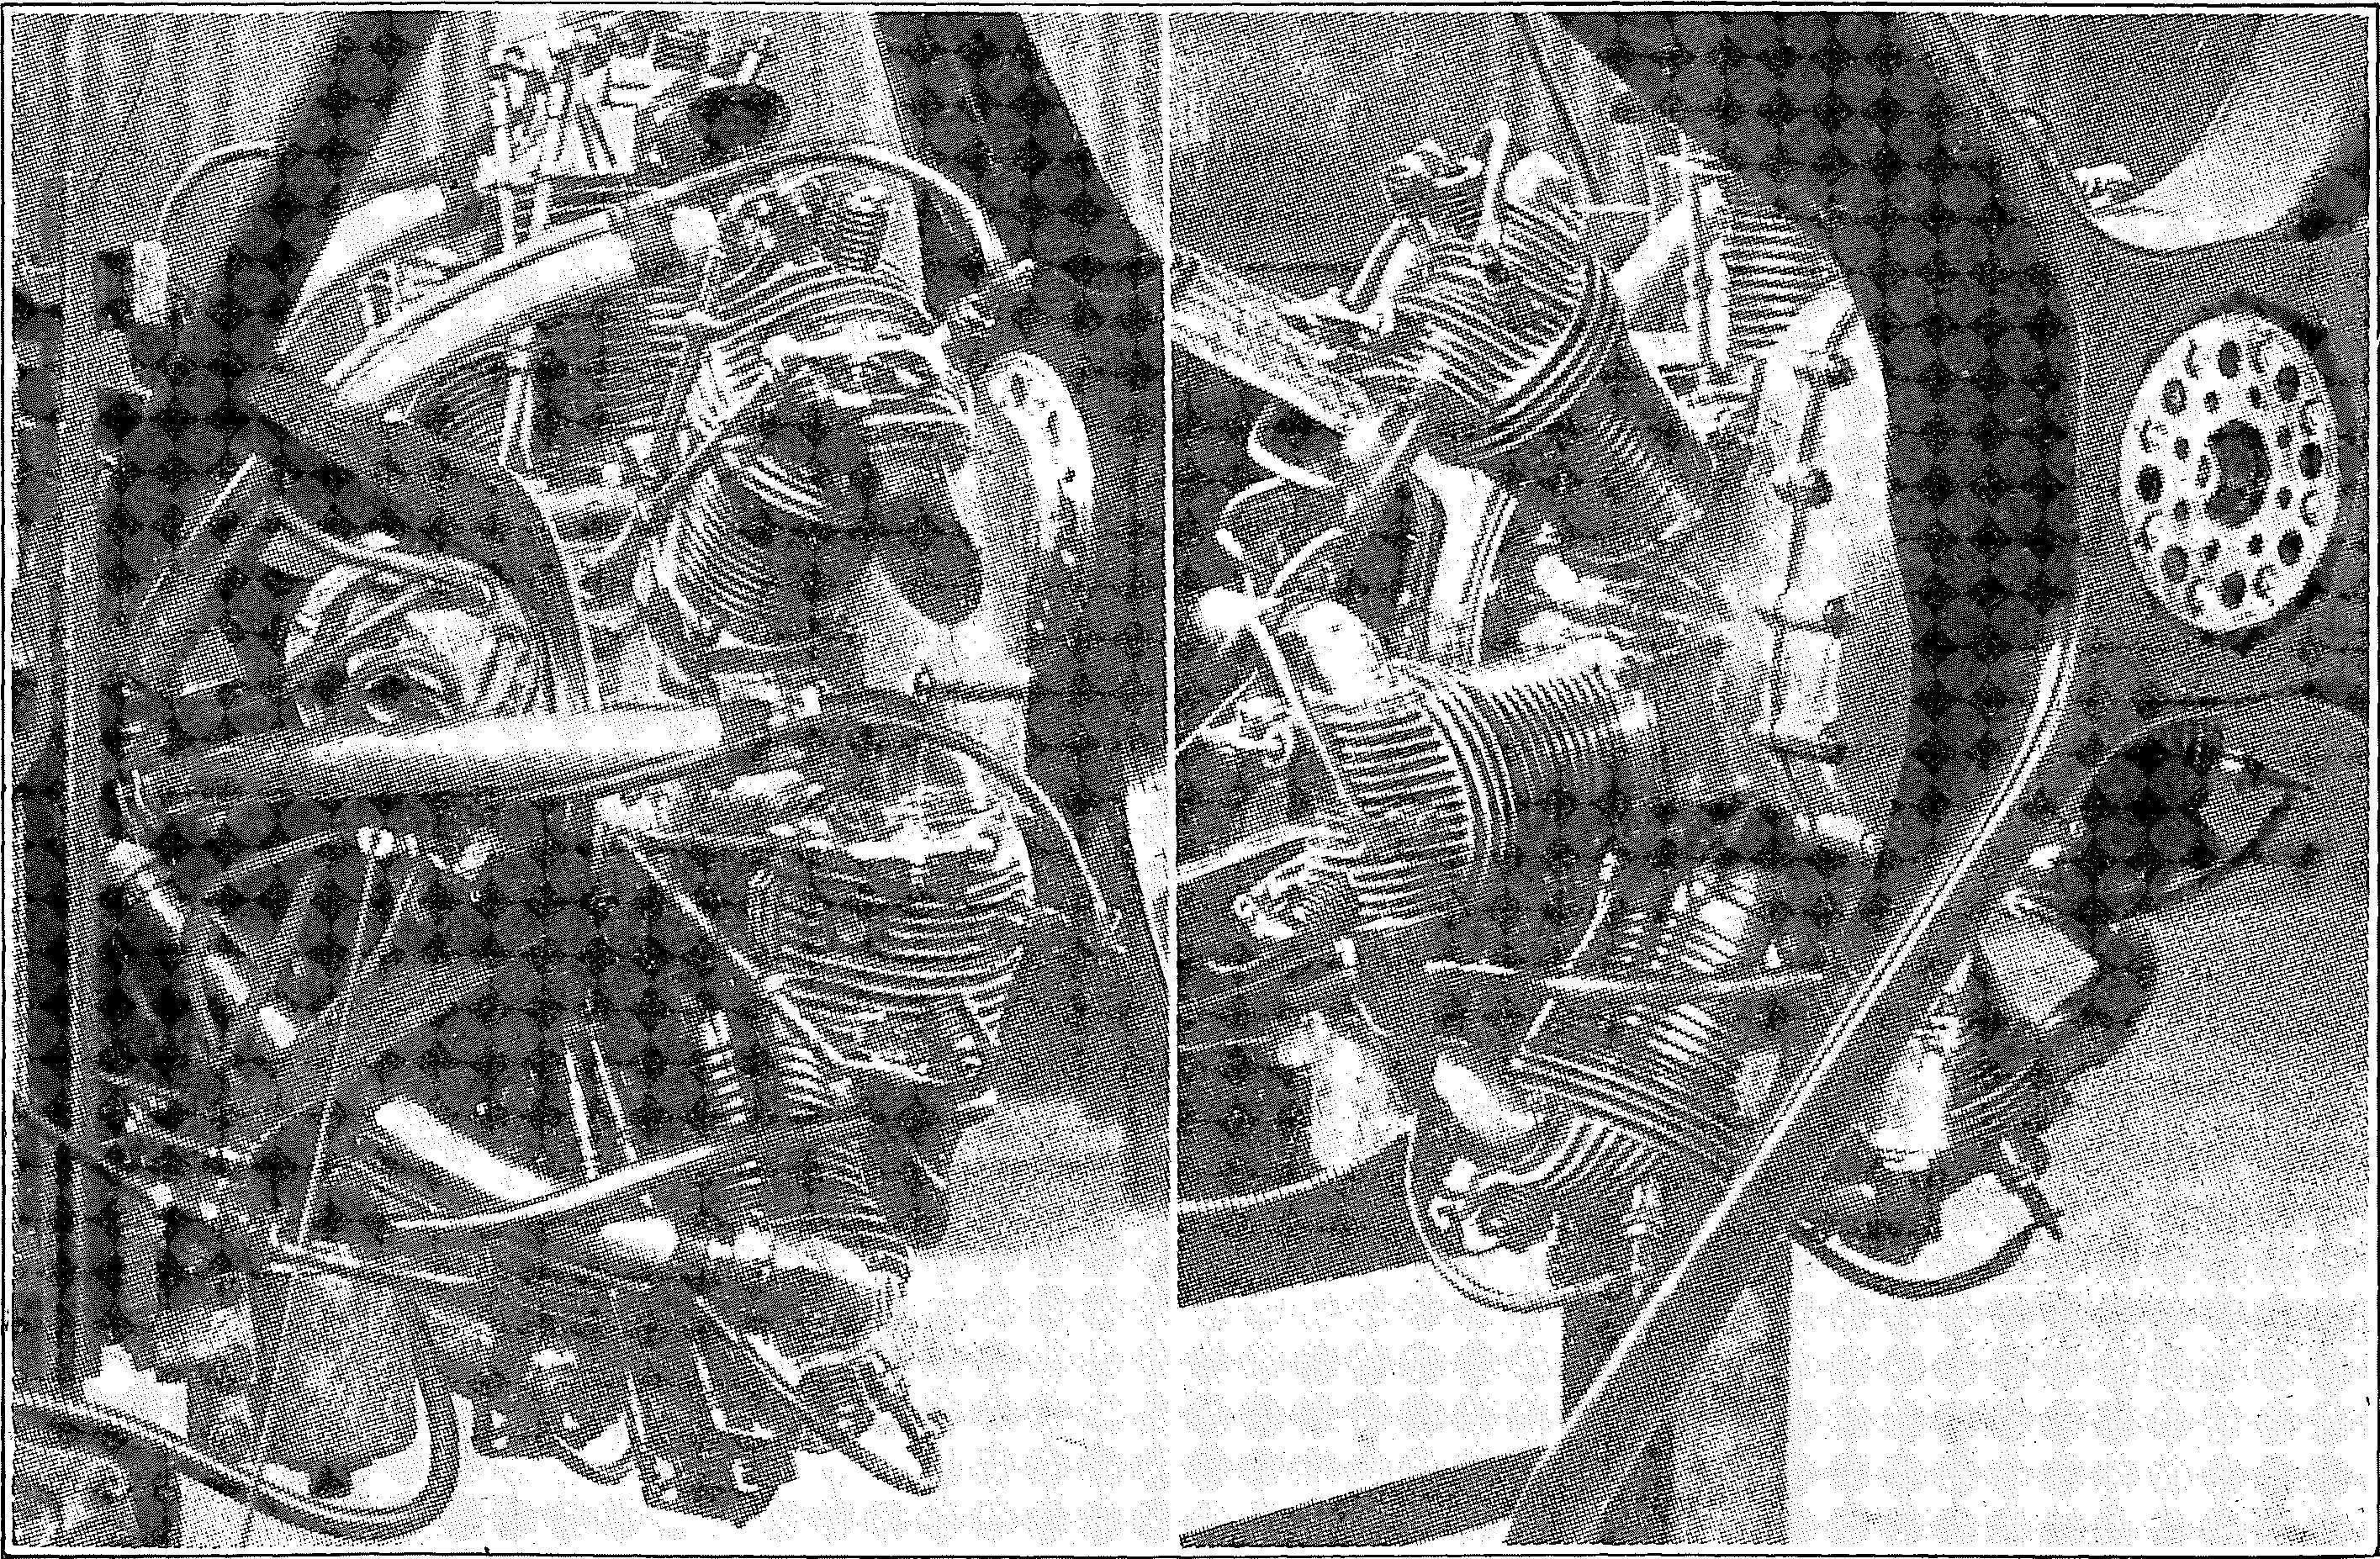 Segelflug, Motorflug und Modellflug sowie Luftfahrt und Luftverkehr im Deutschen Reich (Weimarer Republik) im Jahre 1926